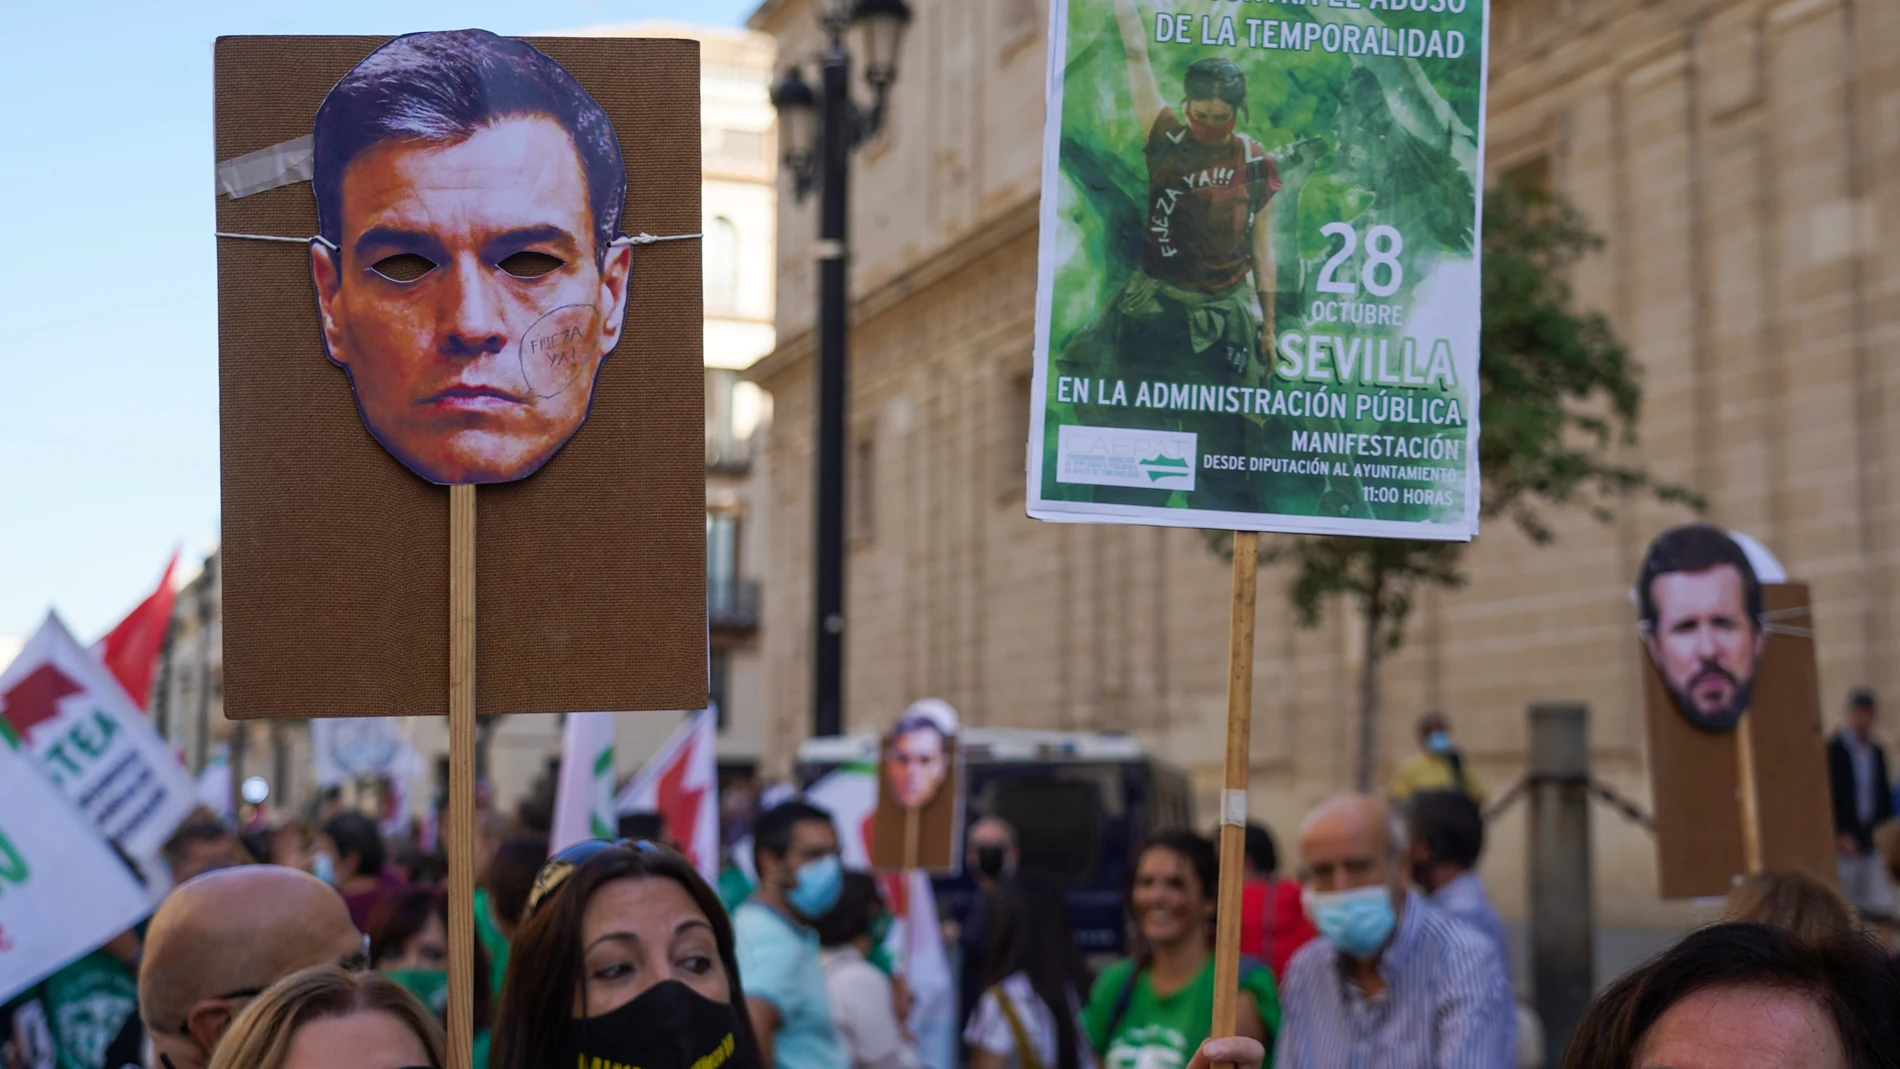 Manifestación de interinos en Sevilla el pasado 28 de octubre